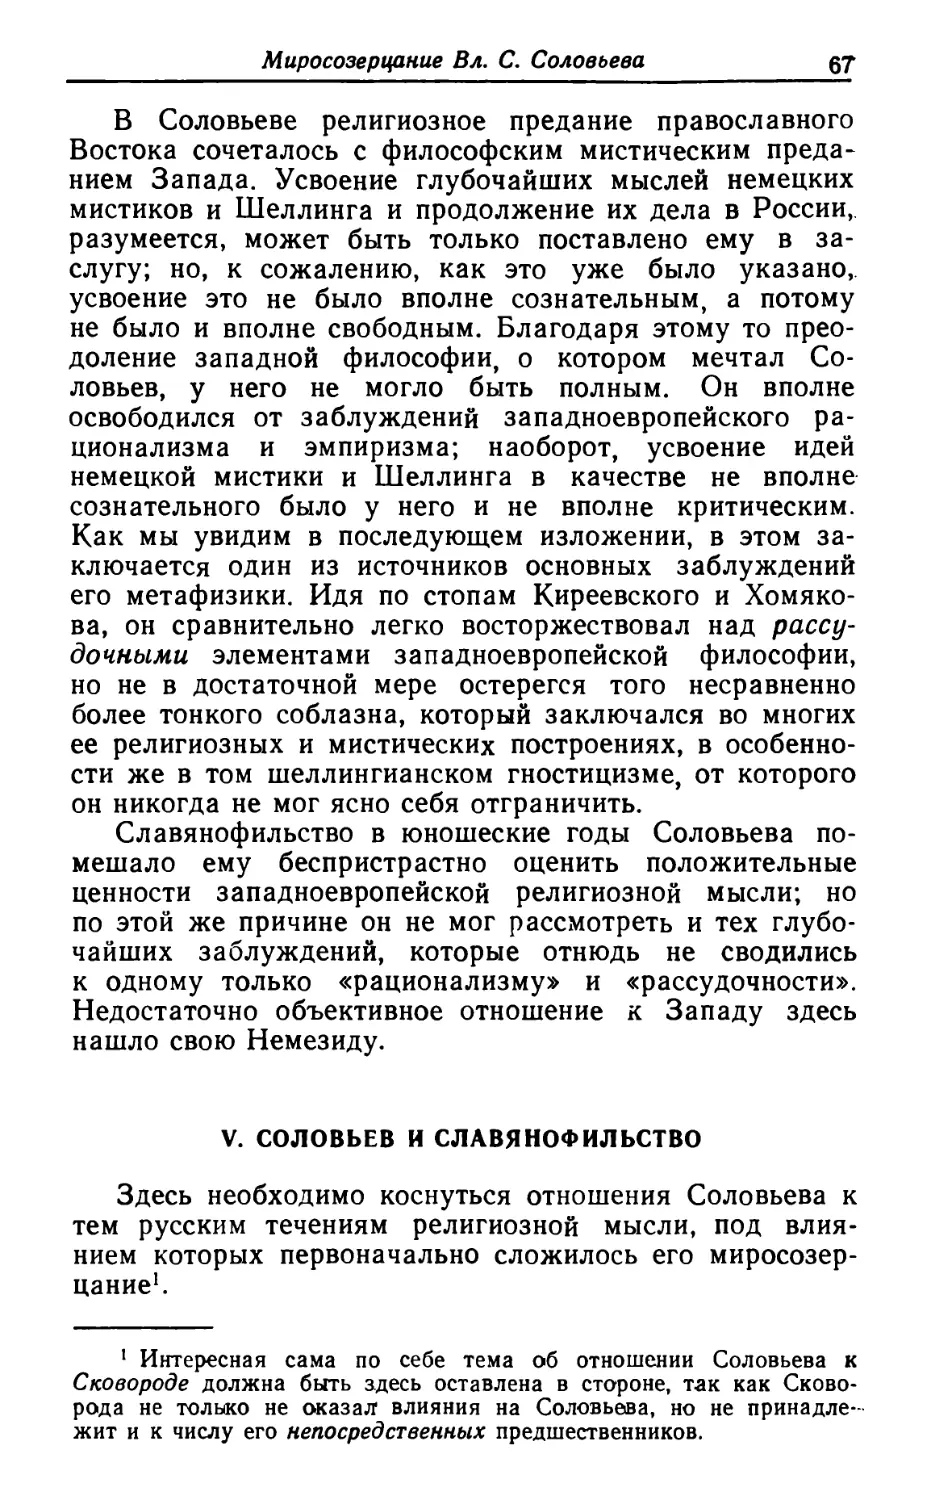 V. Соловьев и славянофильство